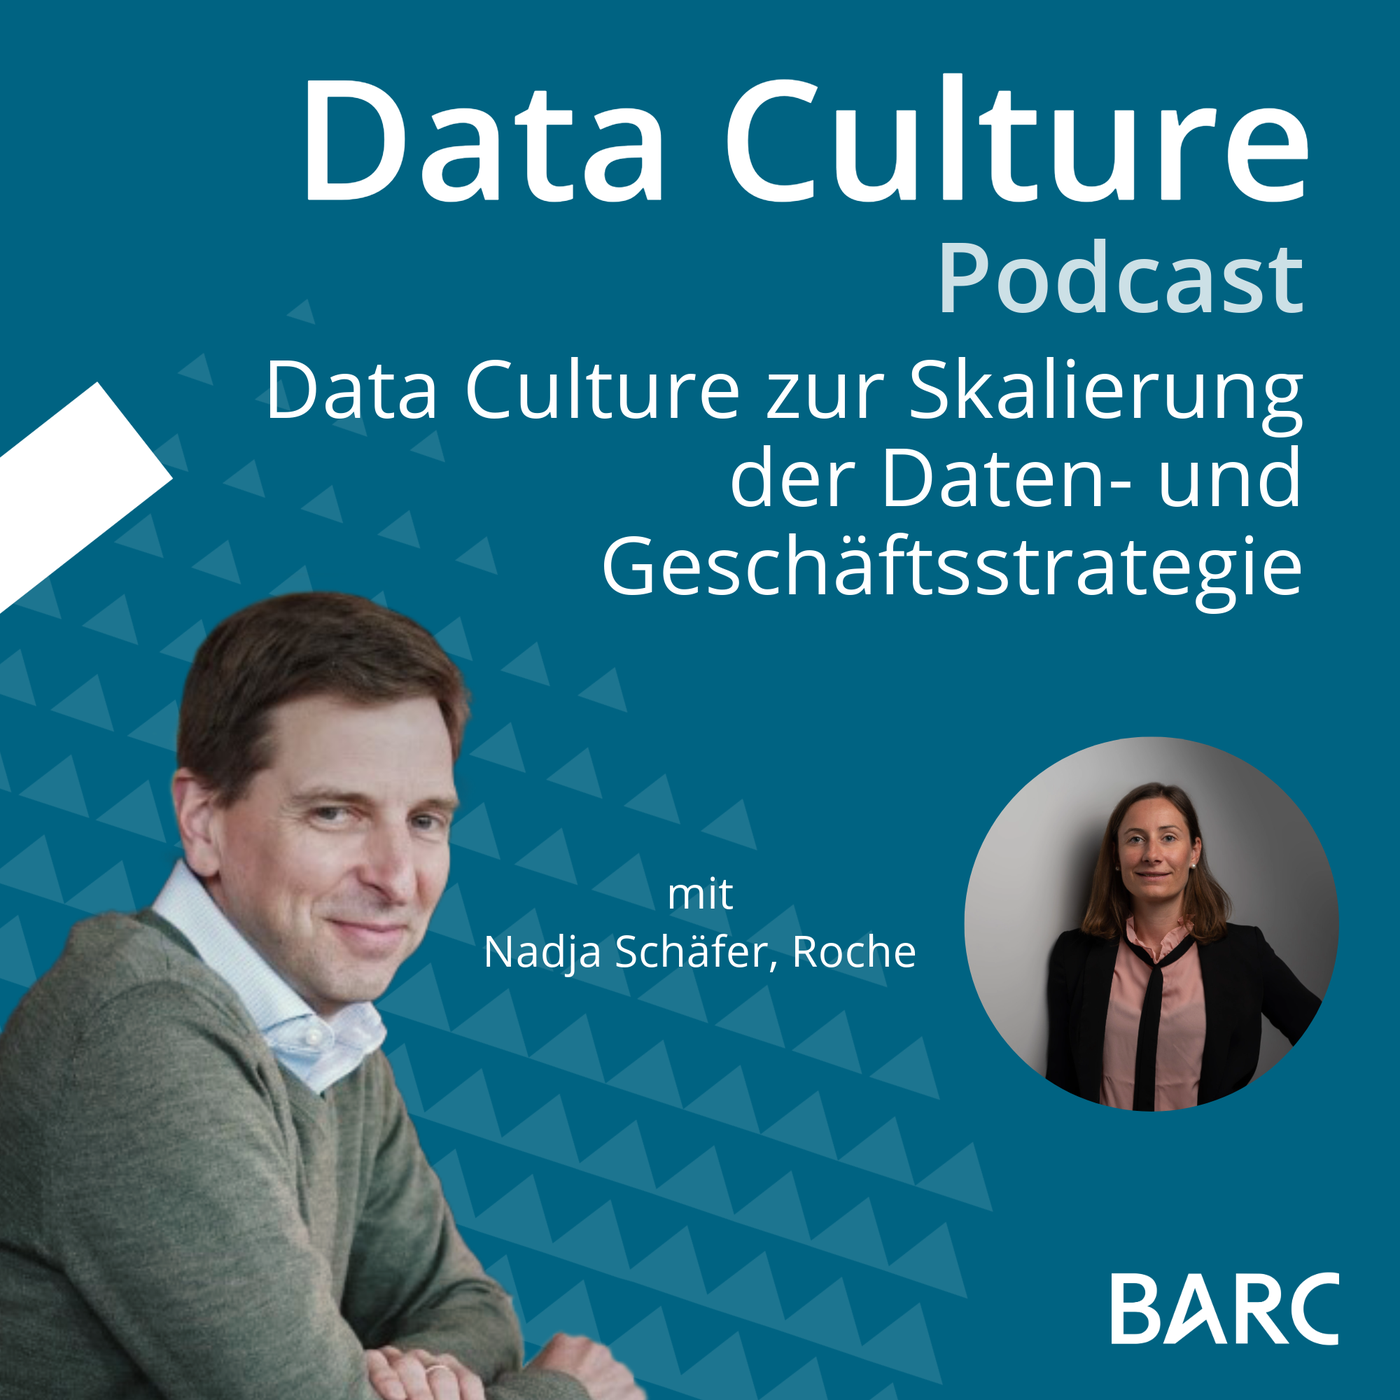 Data Culture zur Skalierung der Daten- und Geschäftsstrategie – mit Nadja Schäfer, Roche